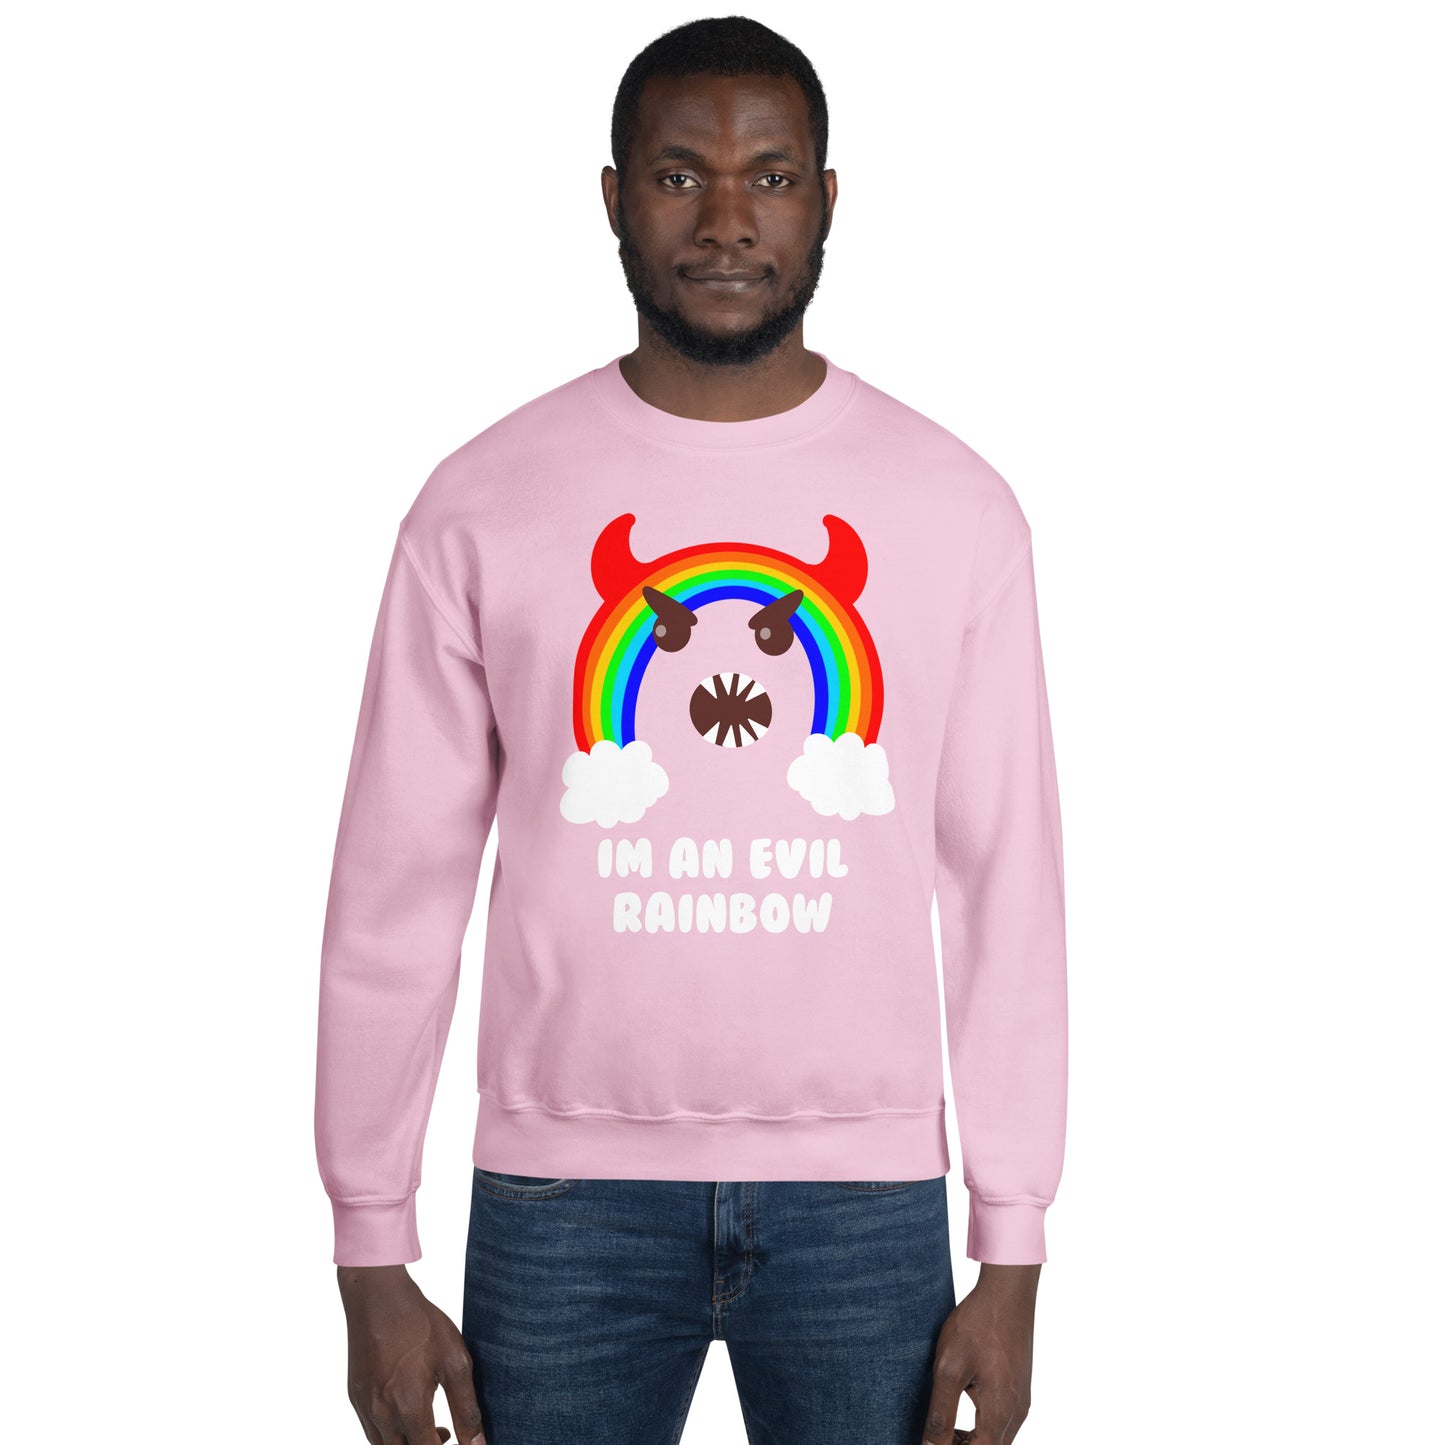 Evil Rainbow Unisex Sweatshirt